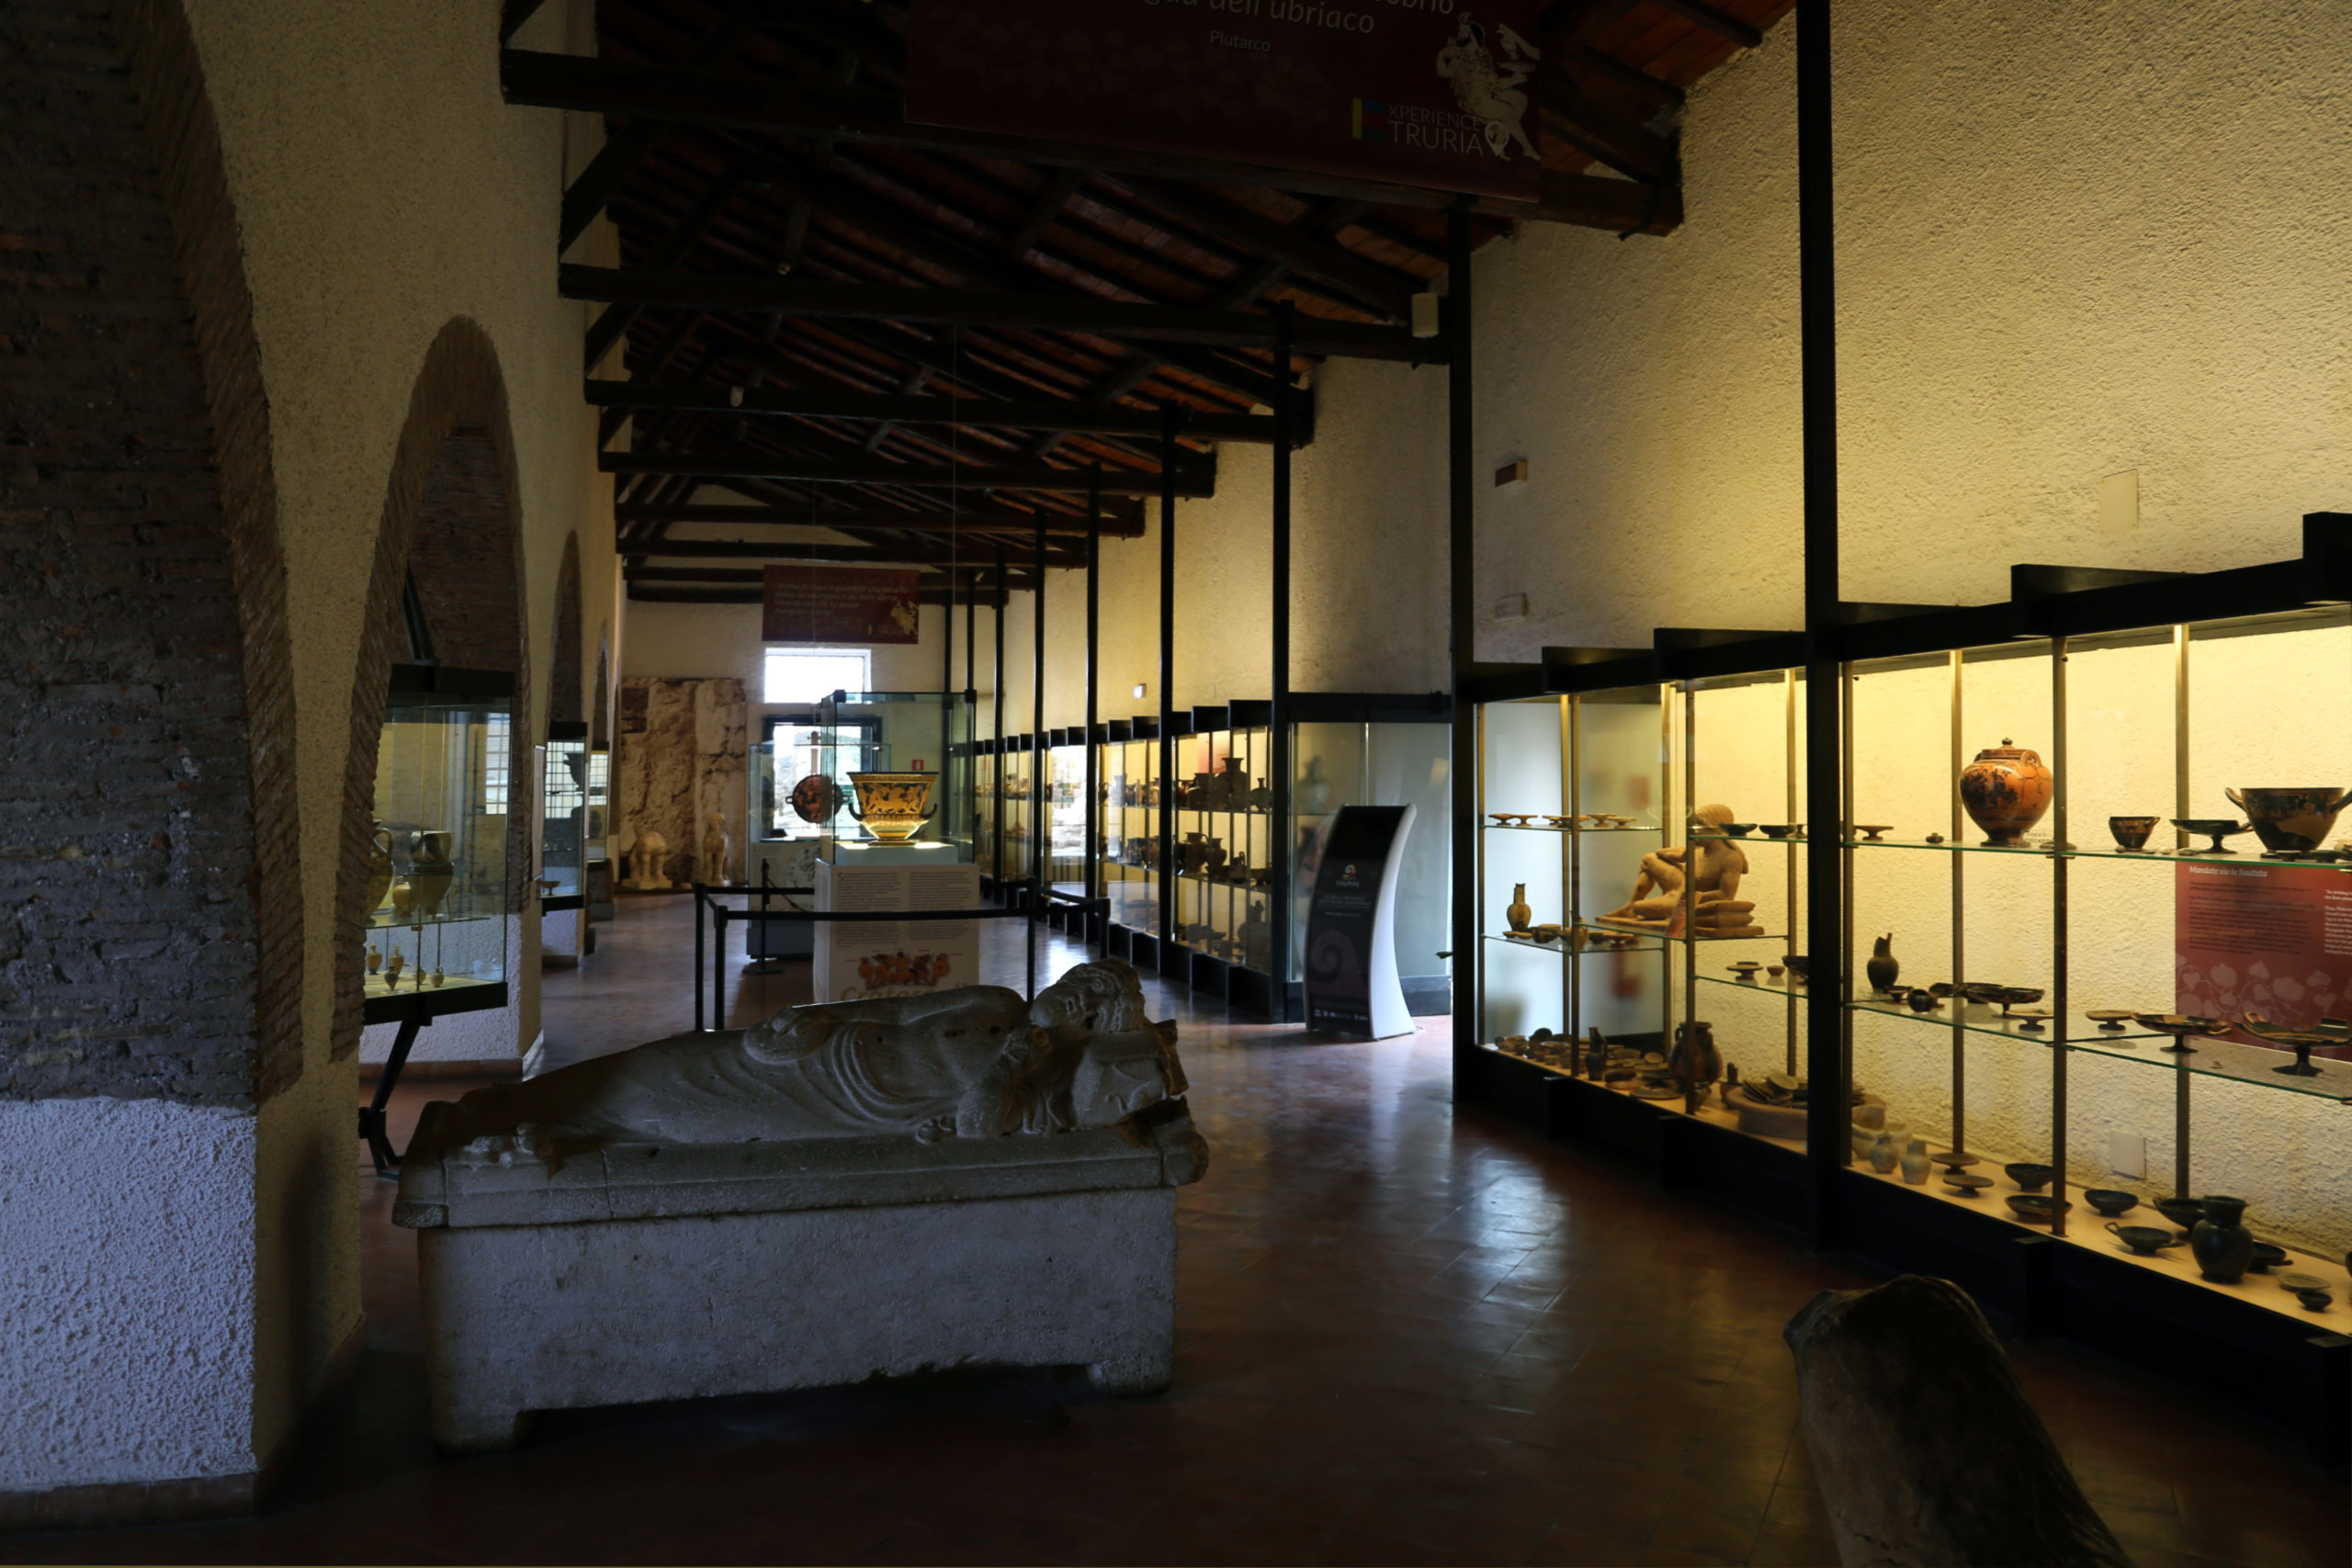 Інтер'єр Національного археологічного музею Черветері (фото: Sailko, CC BY 3.0)